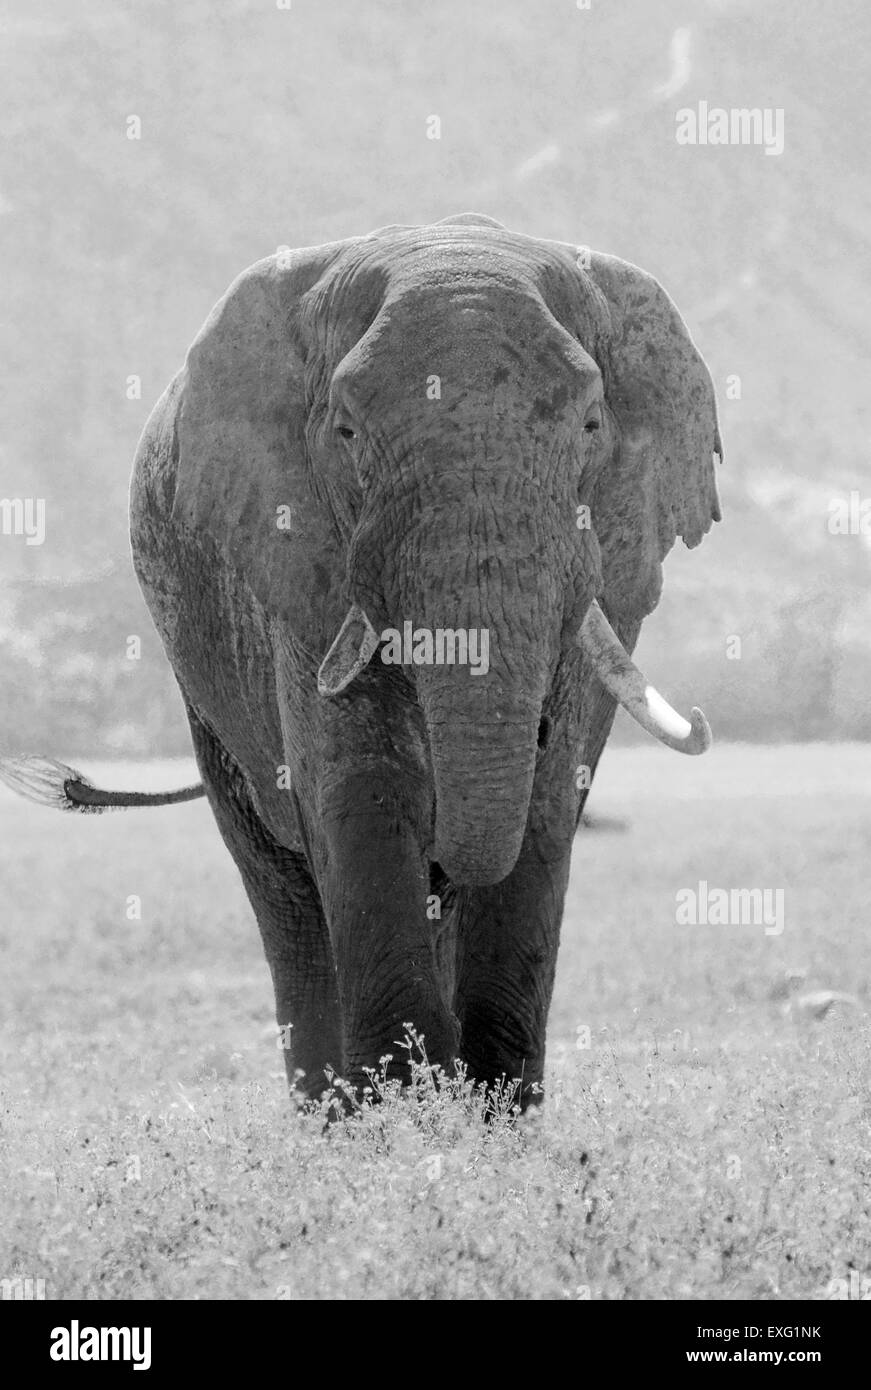 Vieux éléphant africain, Loxodonta africana, dans la zone de conservation de Ngorongoro, en Tanzanie. Image vintage noir et blanc. Banque D'Images